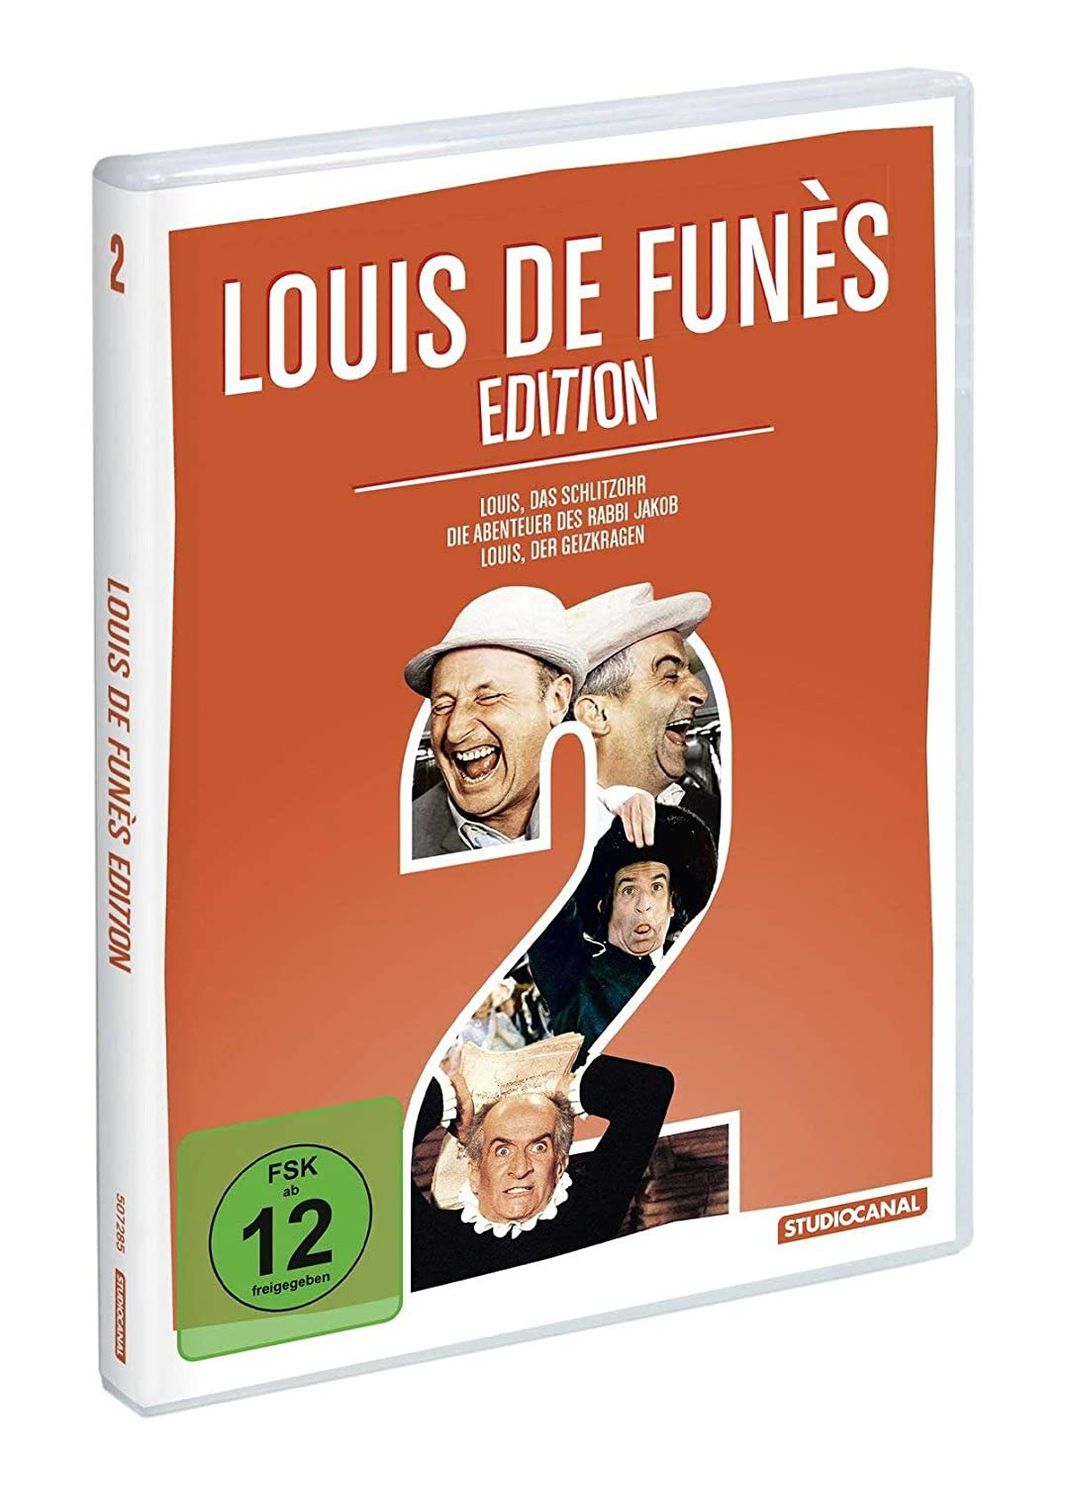 Louis de Funès Edition 2 DVD bei Weltbild.de bestellen